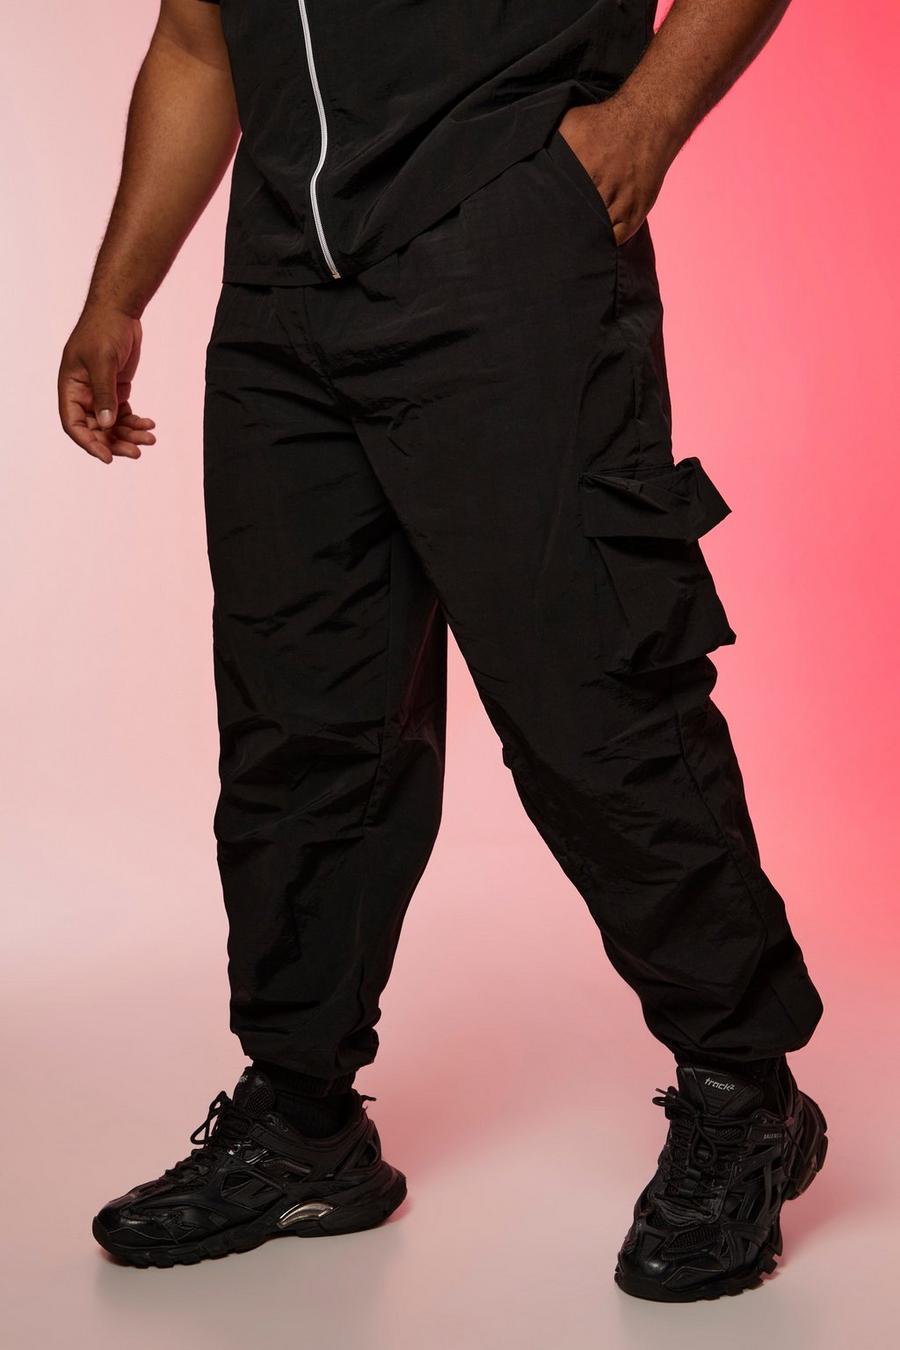 שחור nero מכנסי ניילון דגמ'ח רפויים עם קמטים, מידות גדולות